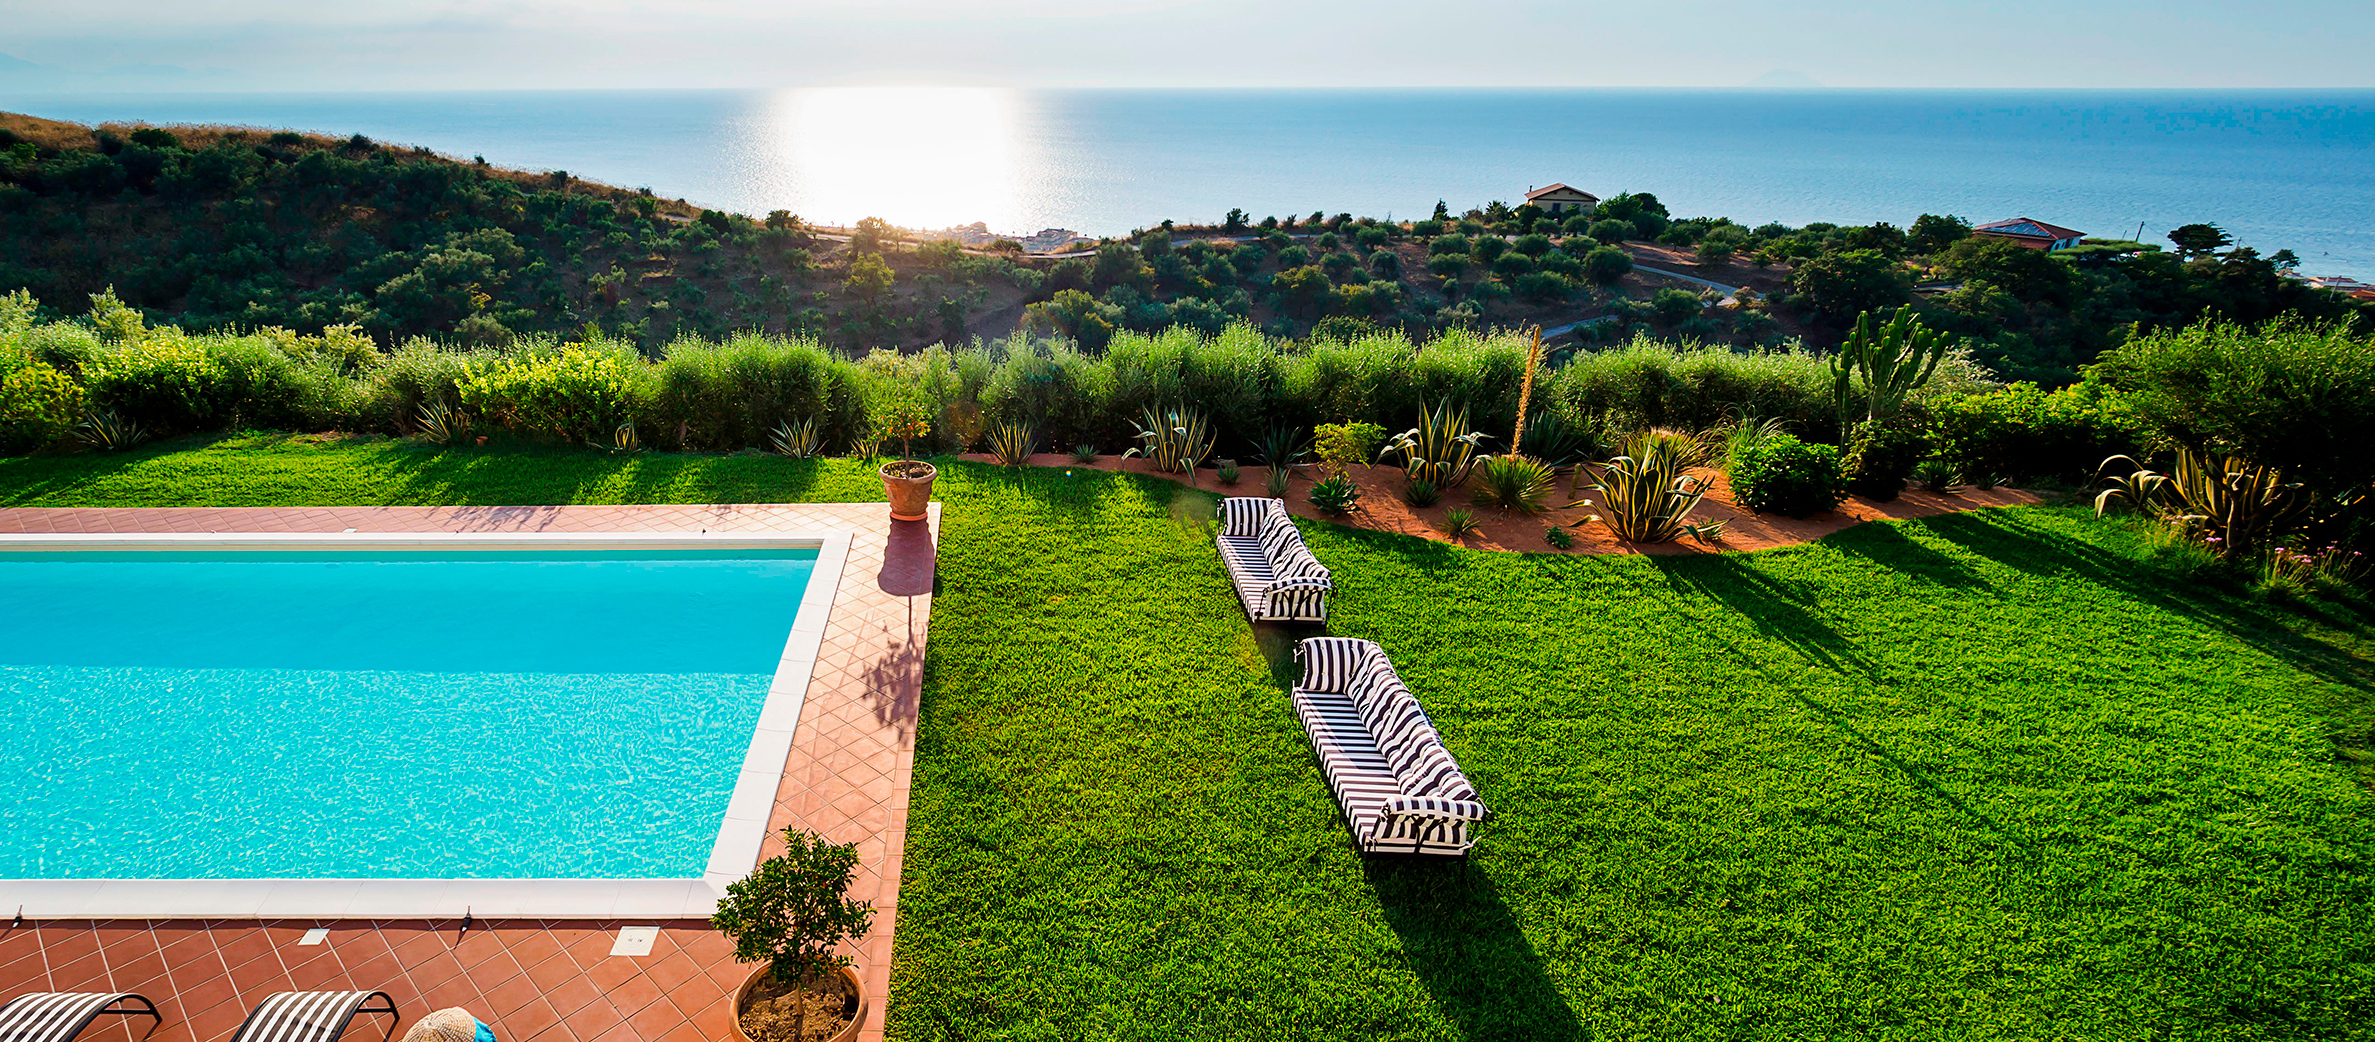 Estella Sicily Luxury Villa with Pool for rent near Capo D’Orlando - 62